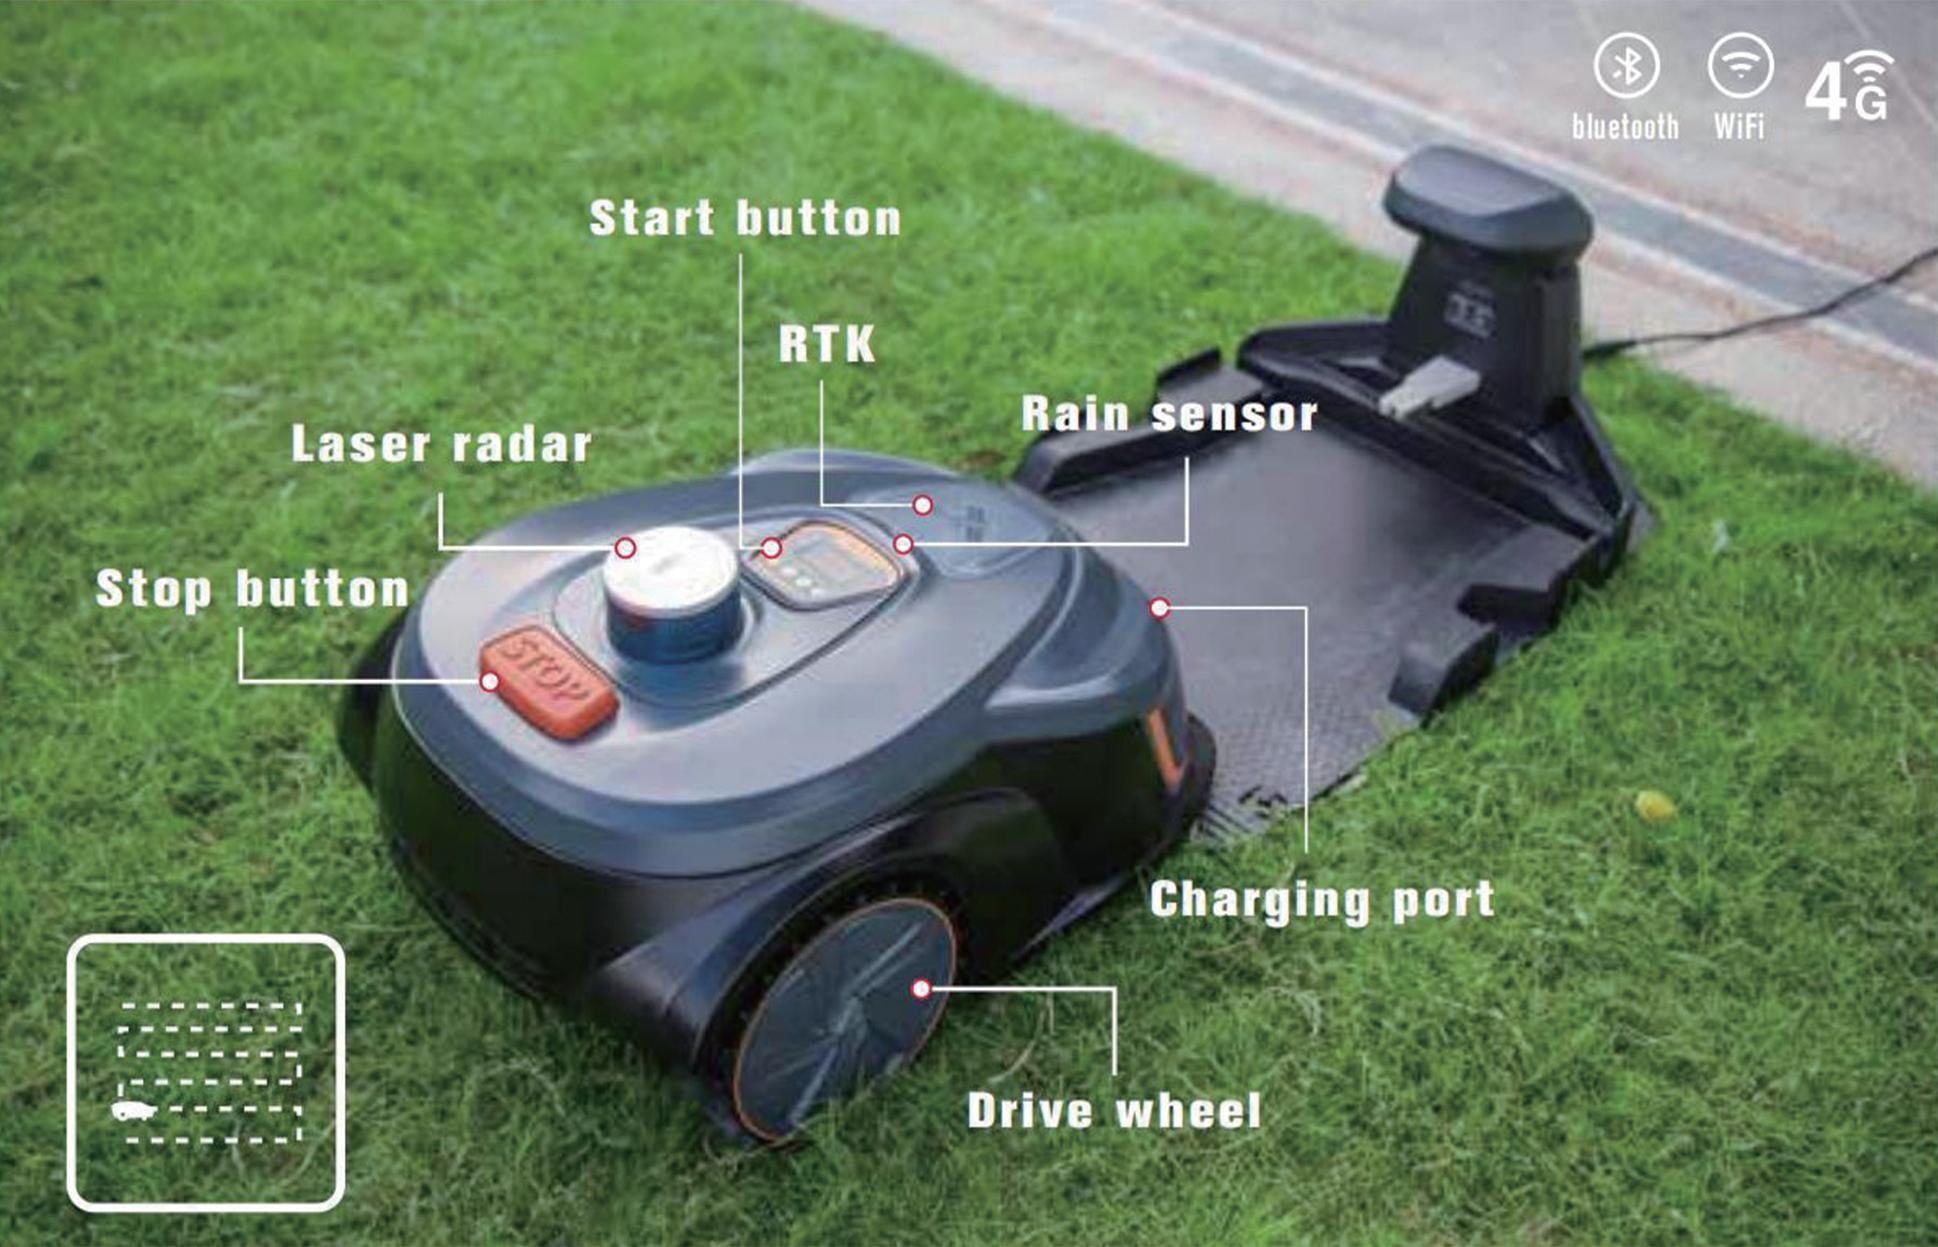 Hantechn@ Smart Robot Lawn Mower M28E1